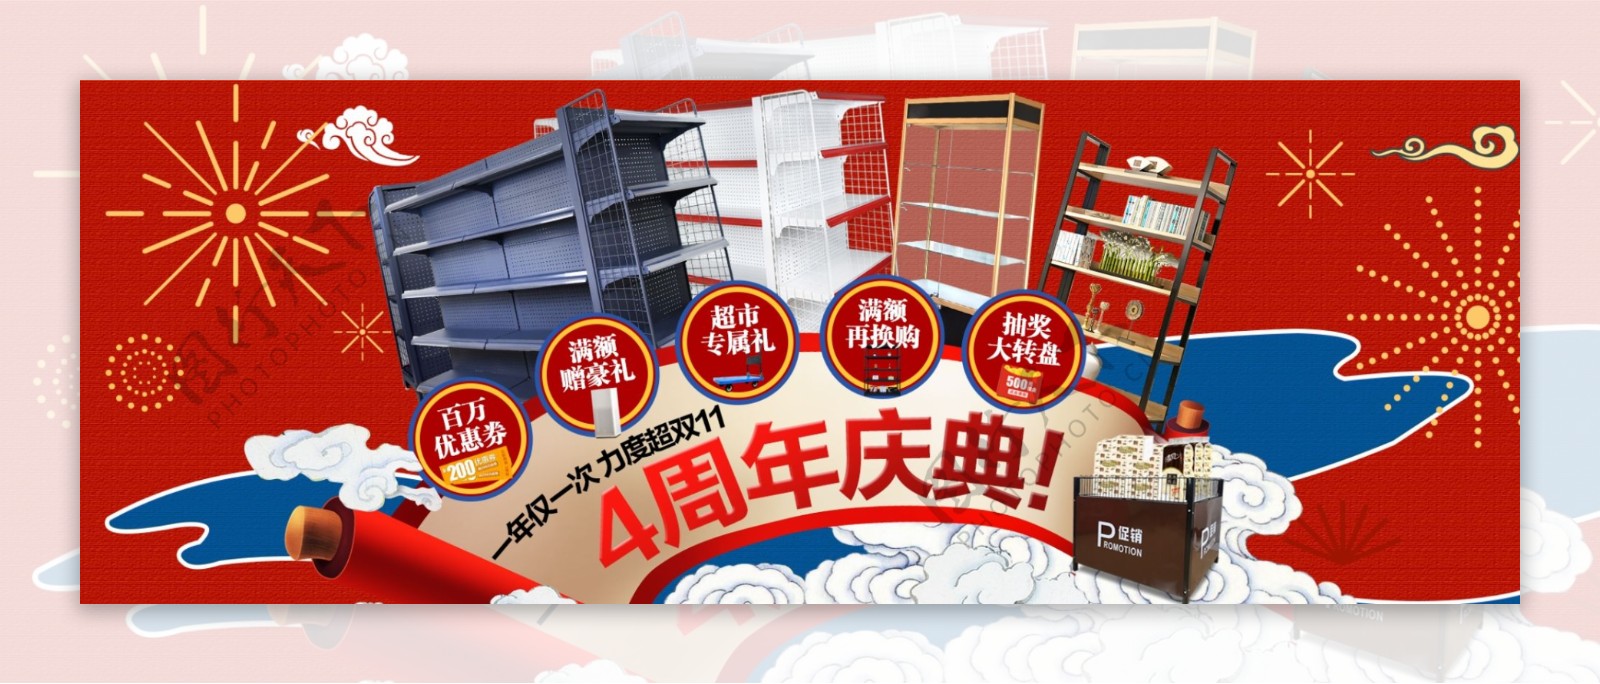 4周年庆banner家装货架红色促销海报